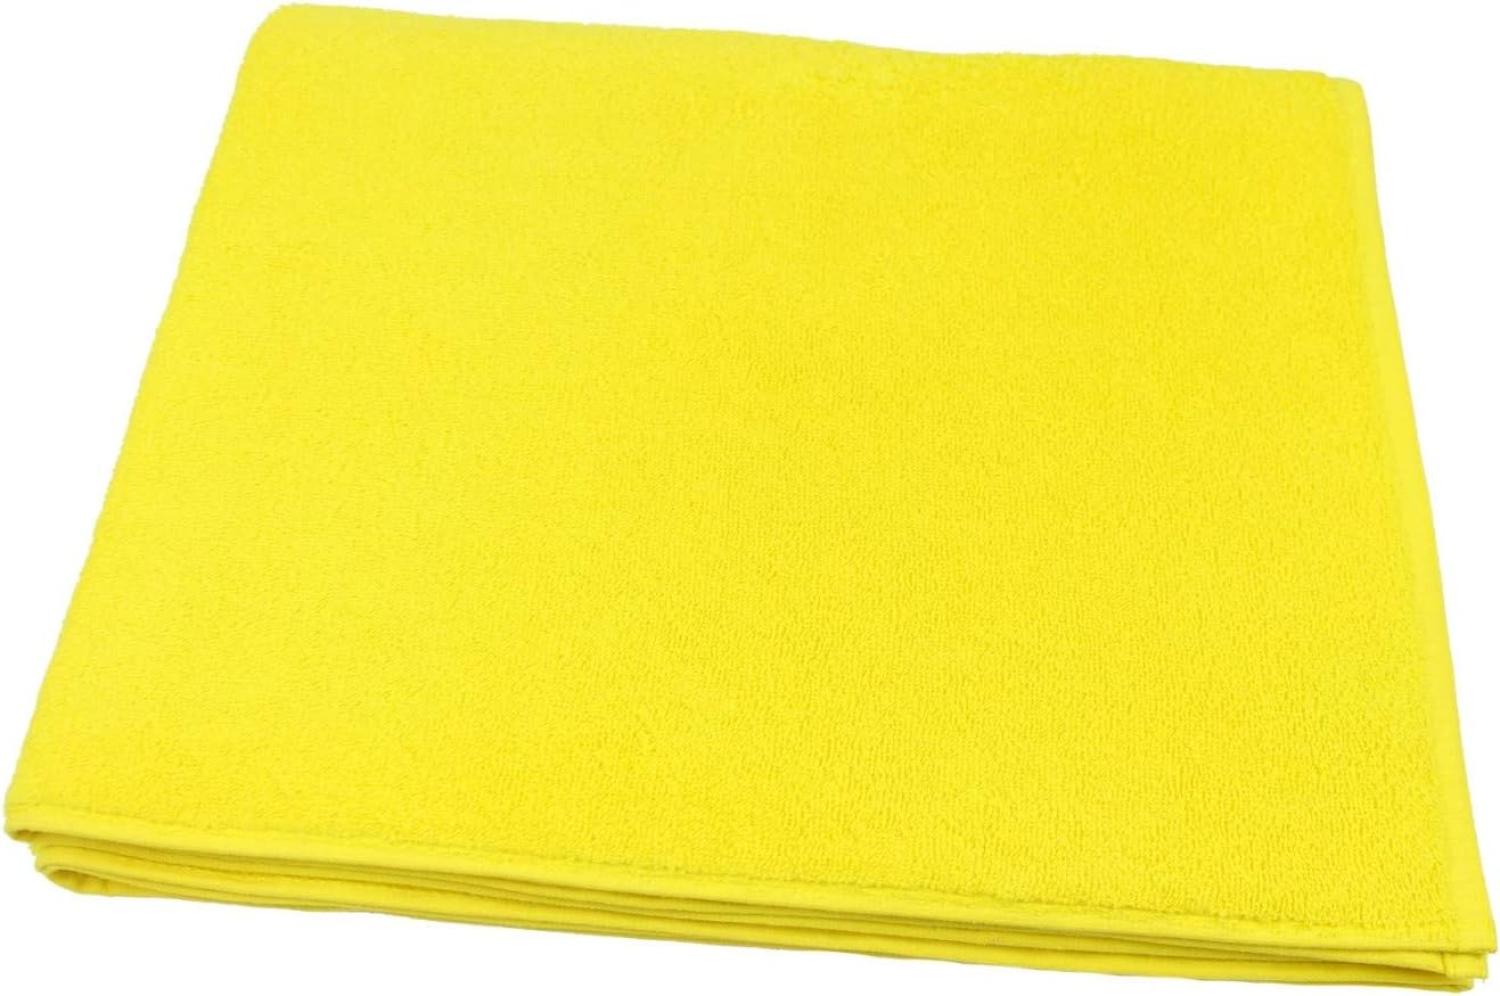 Saunatuch gelb 70x170 cm Baumwolle Frottier »Sensepura« Bild 1